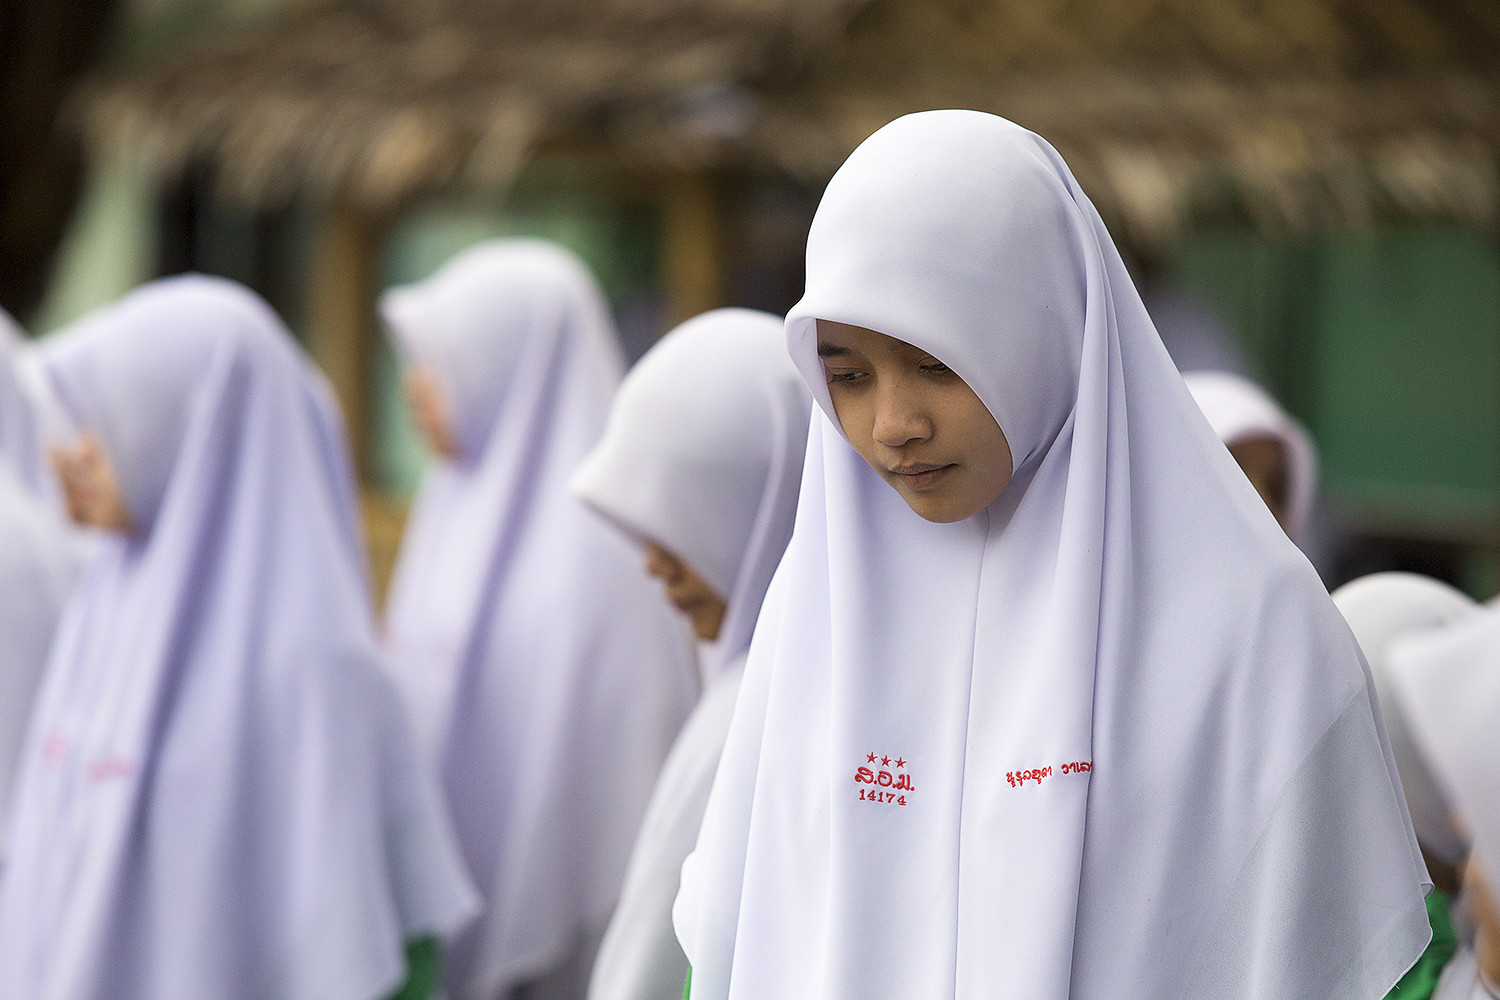 Muslim school girls in Yala, Southern Thailand